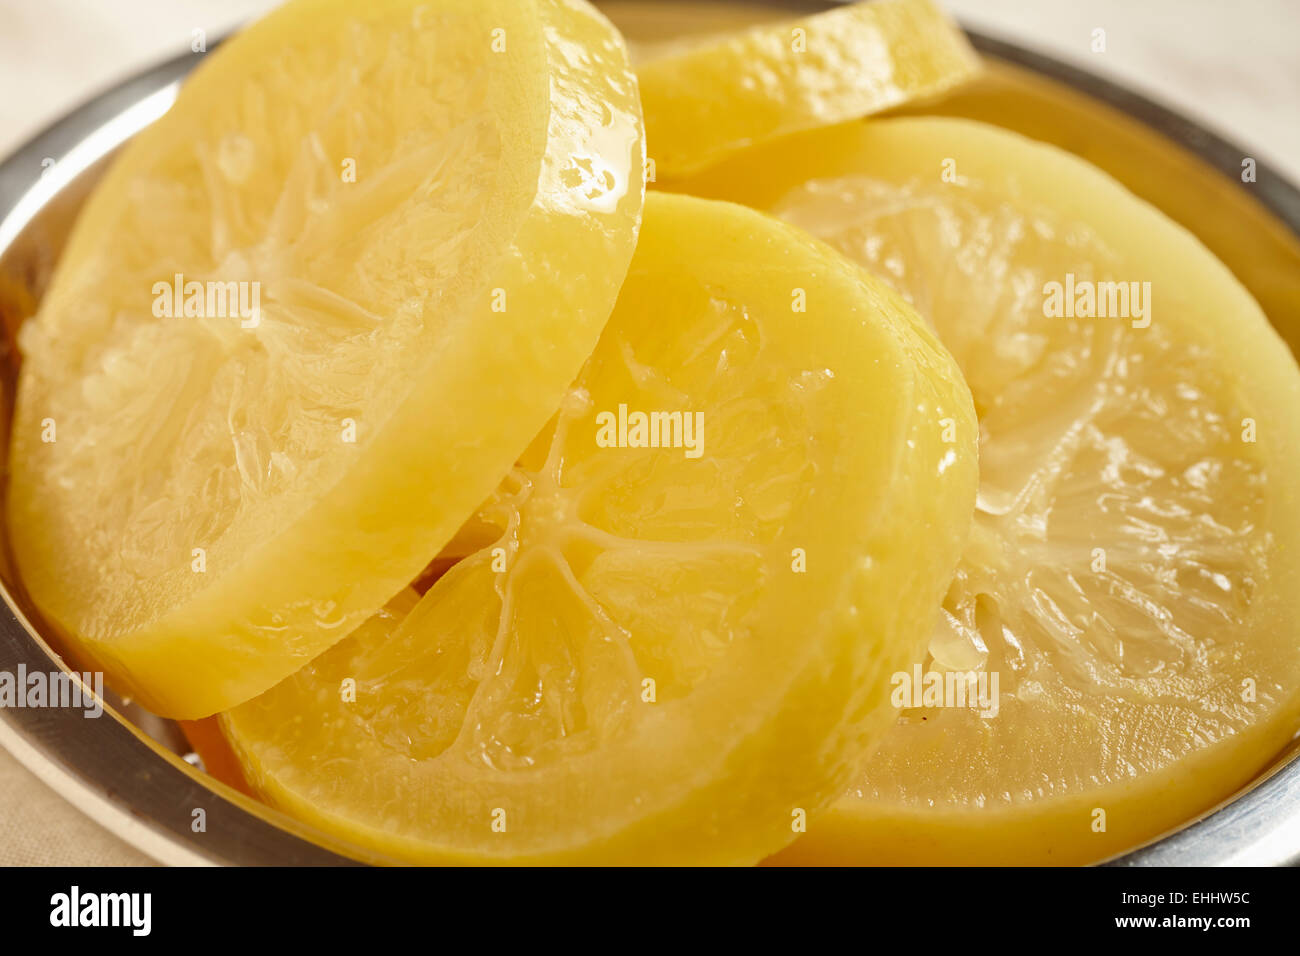 Tranches de citron conservé tunisien Banque D'Images